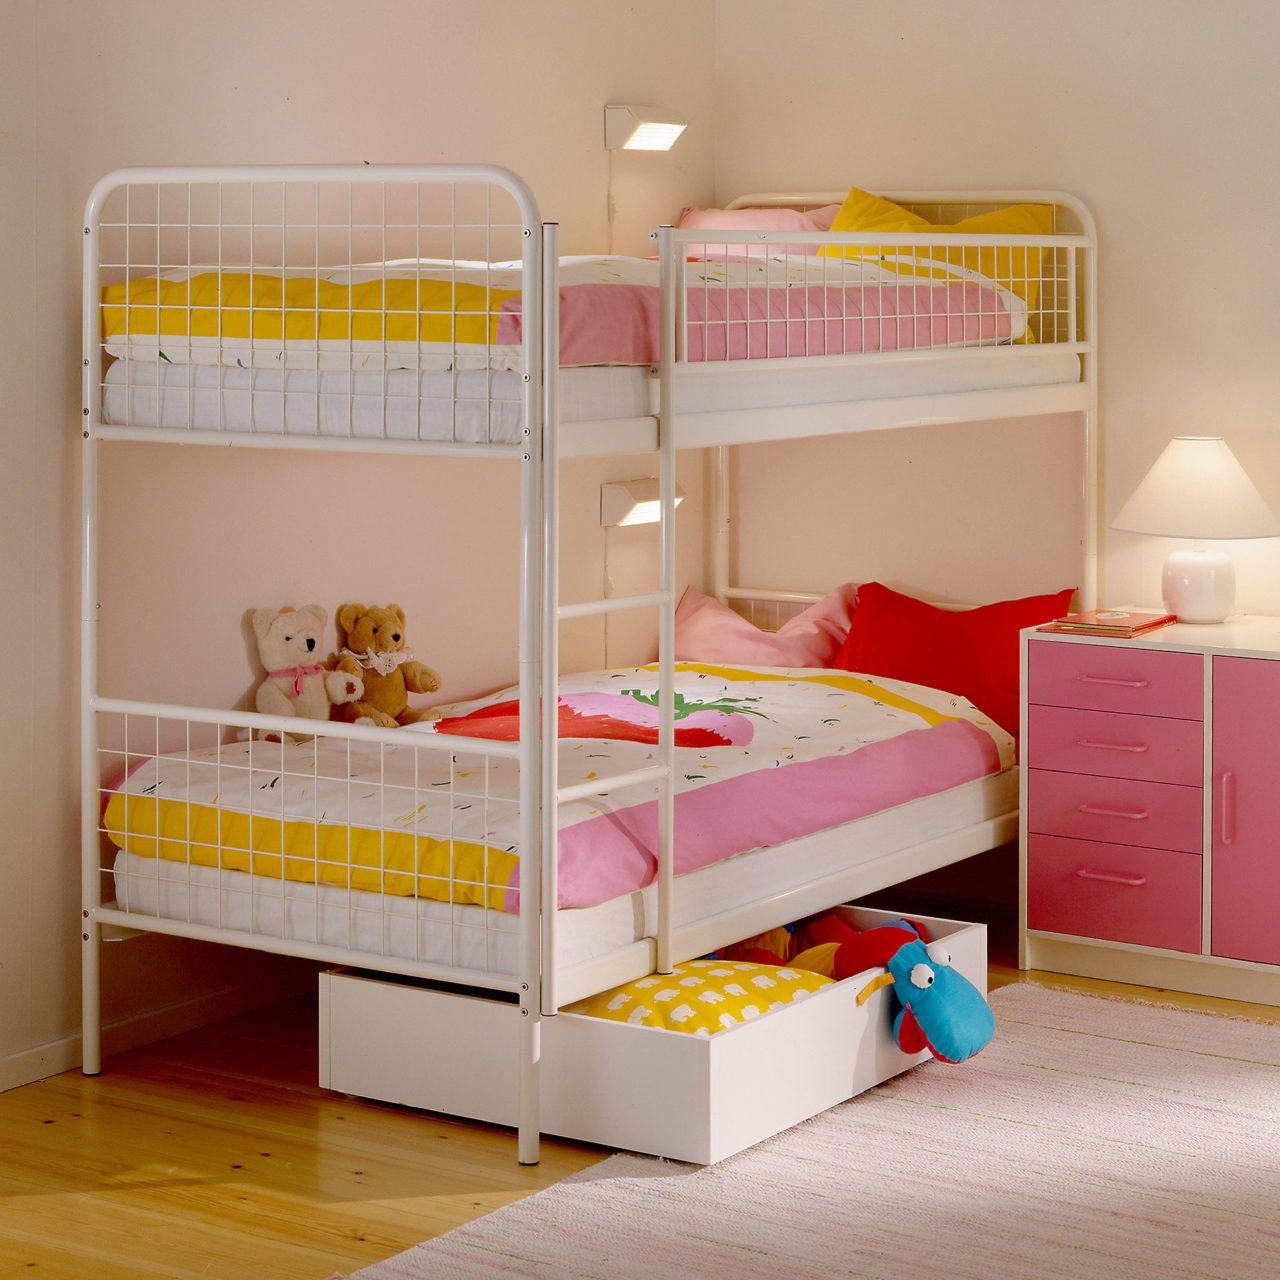 Chambre d’enfant avec lit superposé aux draps bien tirés, autres meubles et détails roses, jaunes et blancs.